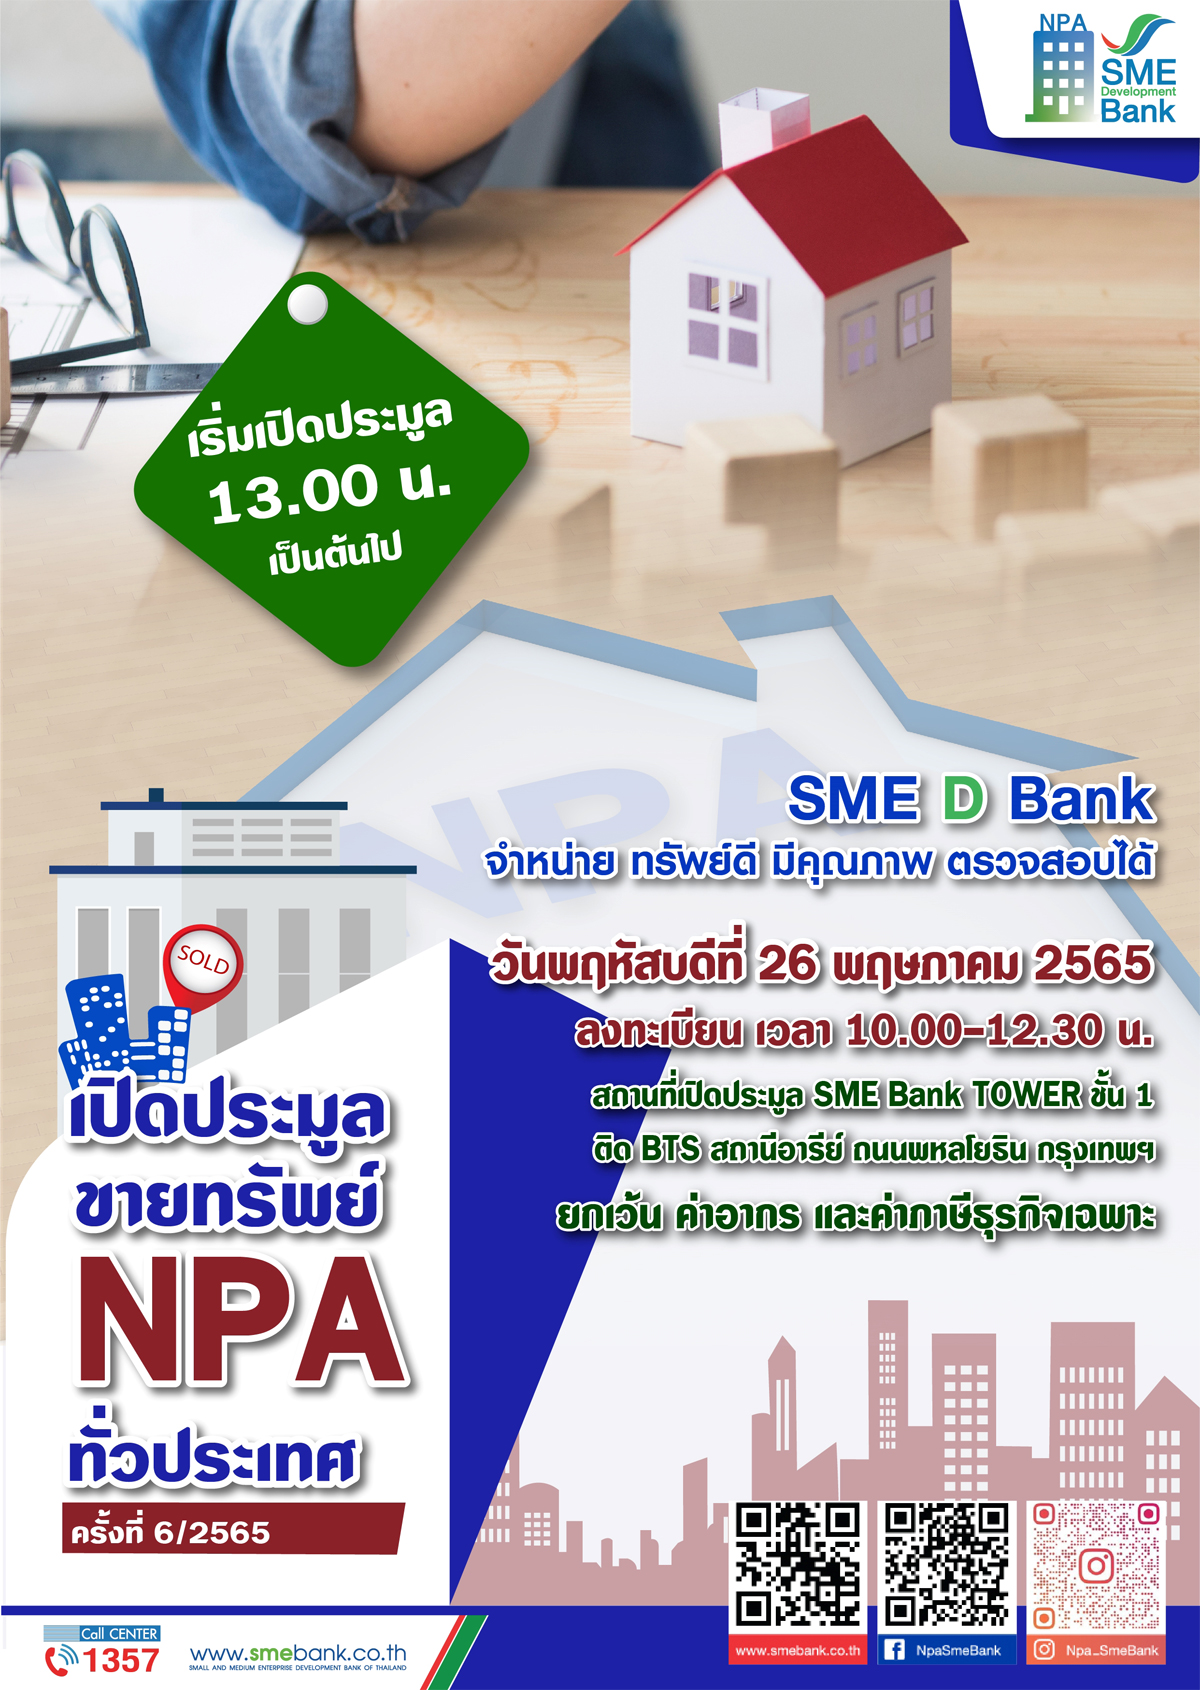 SME D Bank เปิดประมูลขายทรัพย์ NPA ทั่วประเทศ ครั้งที่ 6/2565